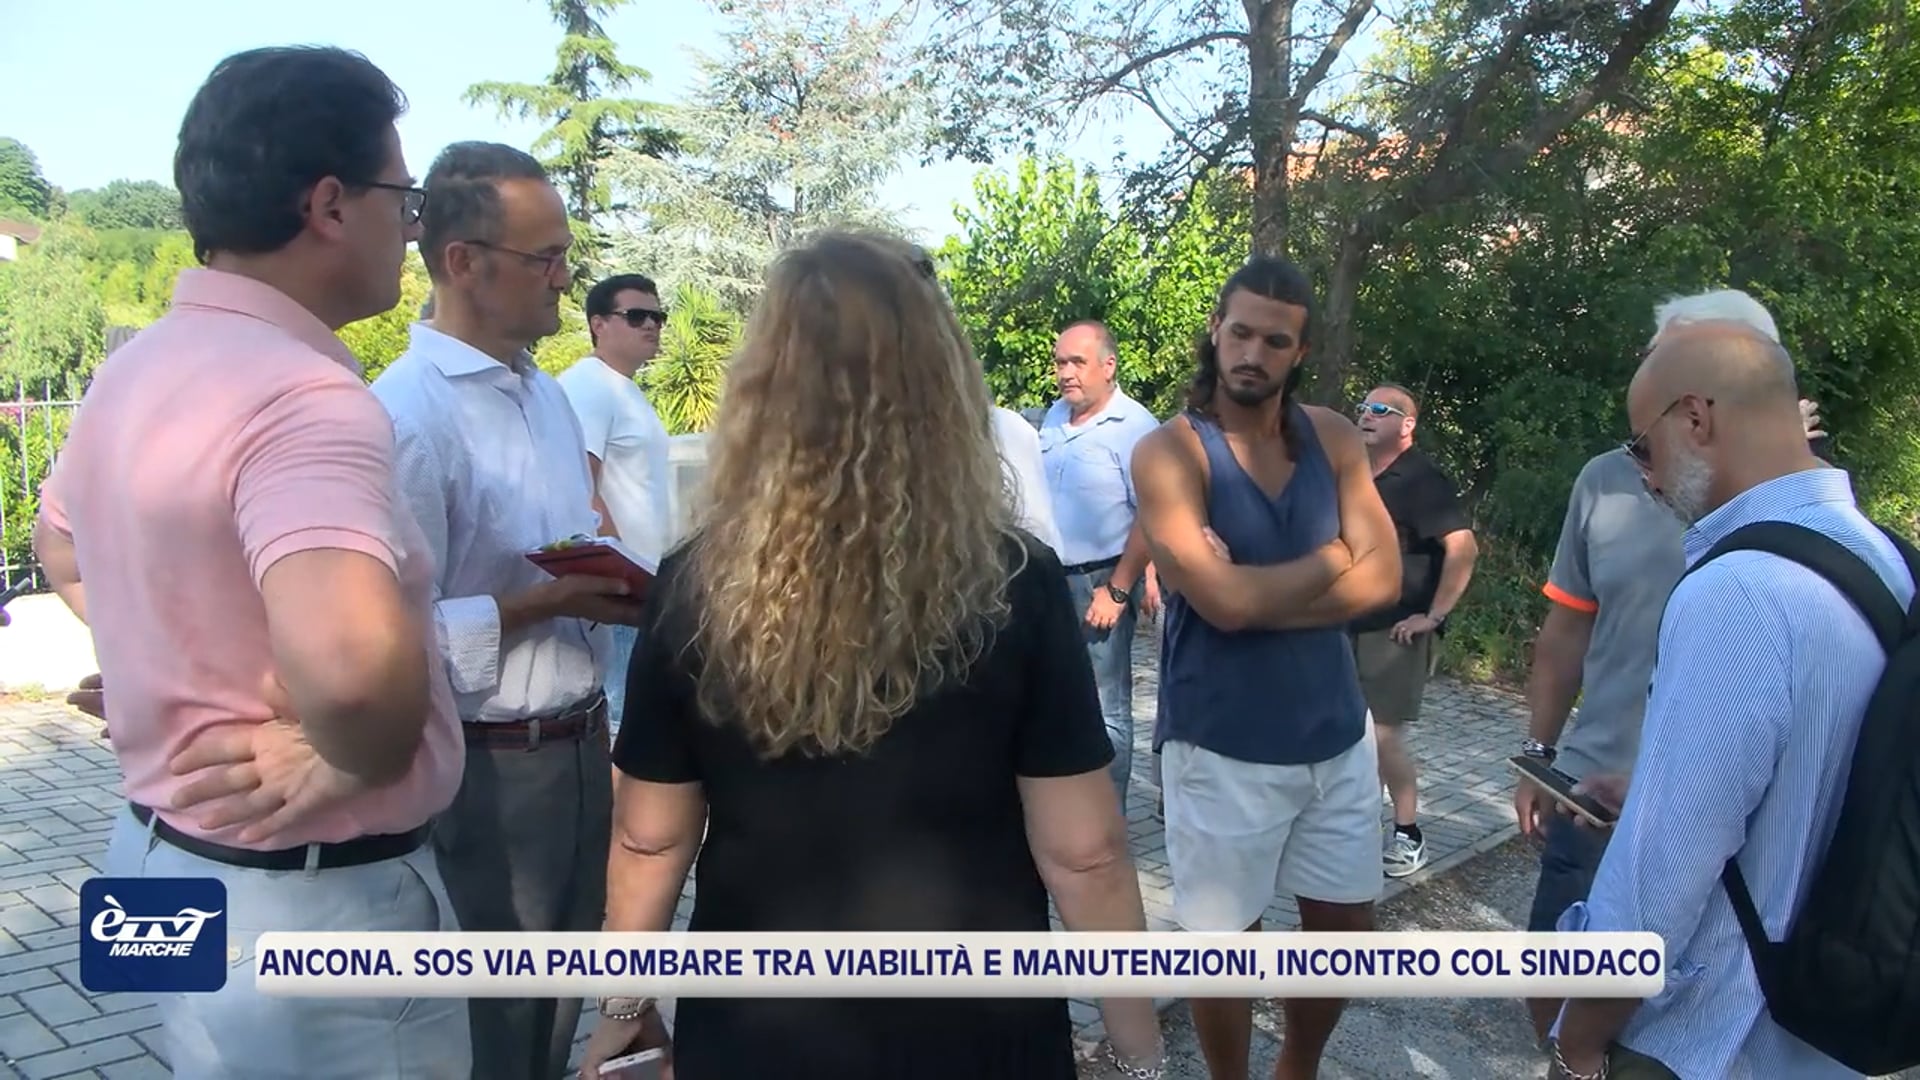 Ancona. Sos via Palombare tra viabilità e manutenzioni, incontro col sindaco - VIDEO